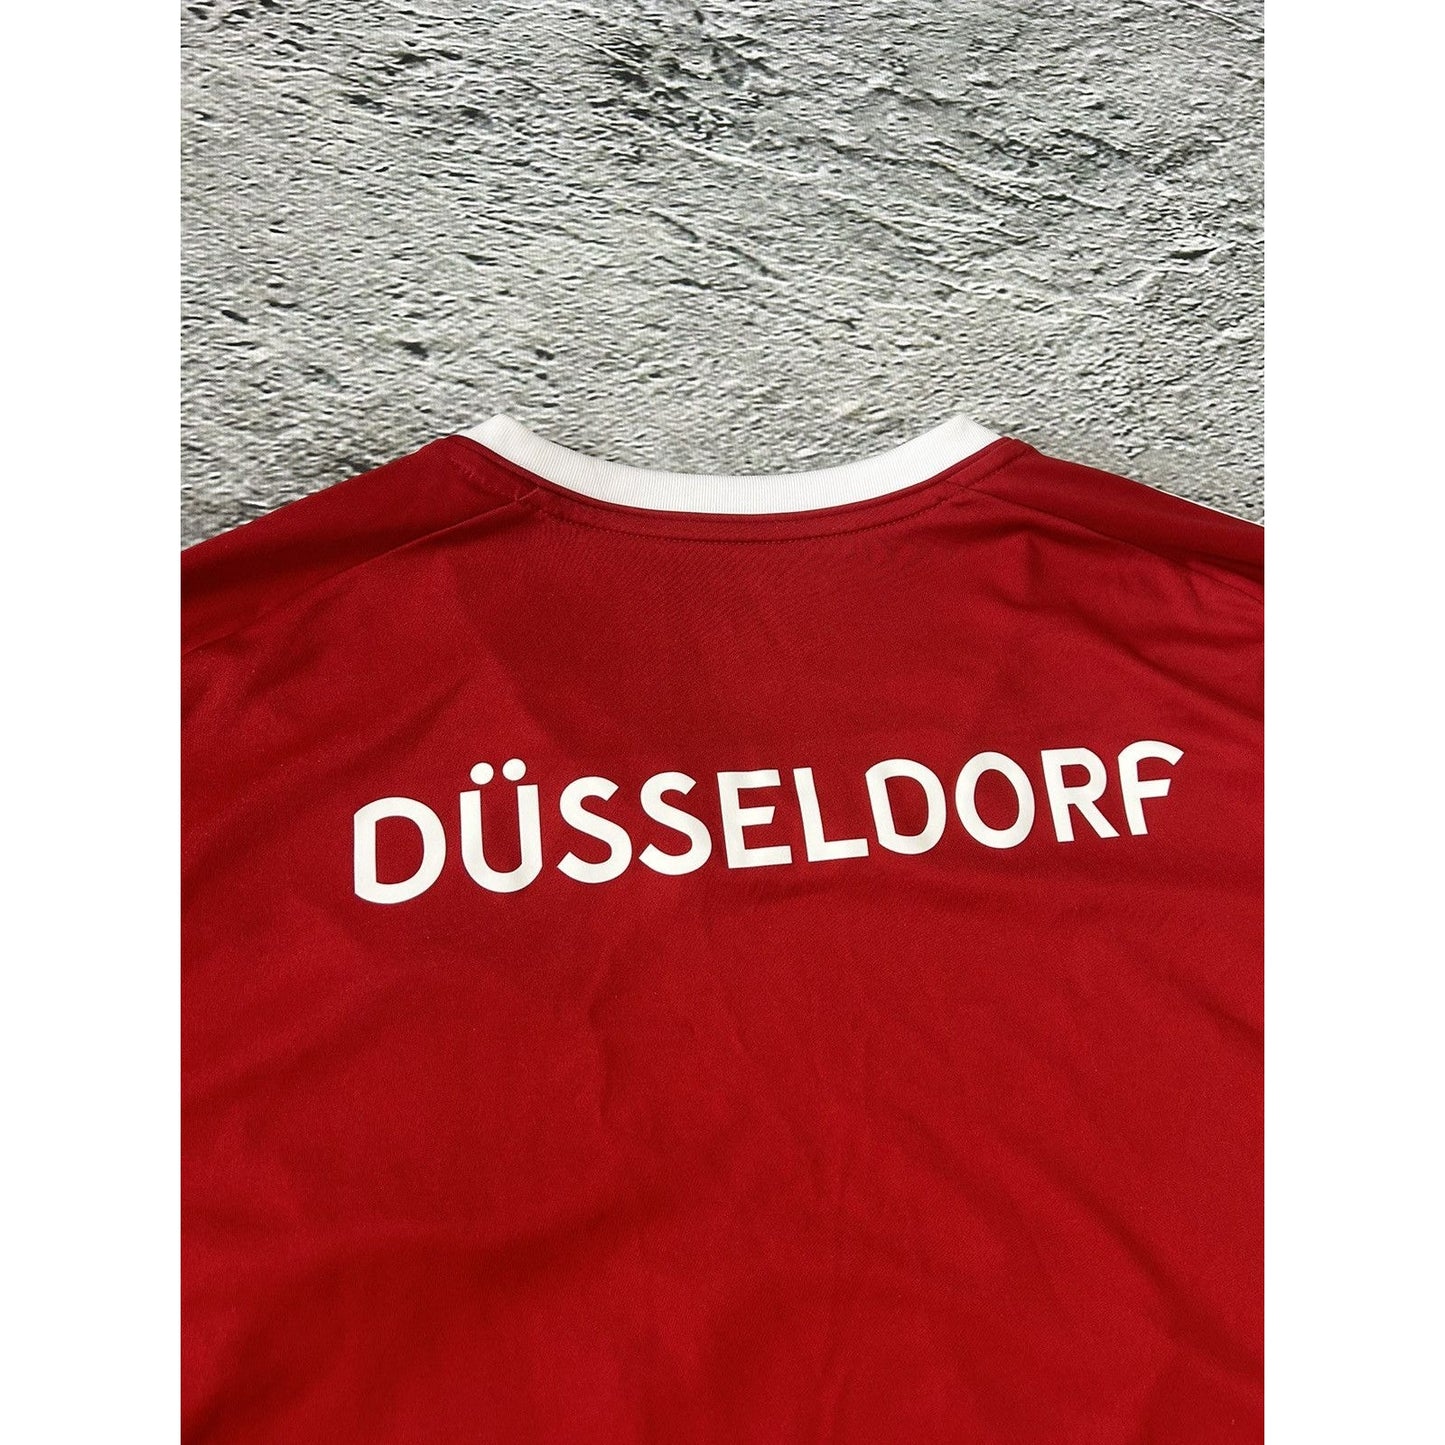 Fortuna Düsseldorf jersey red Henkel 22/23 home kit adidas